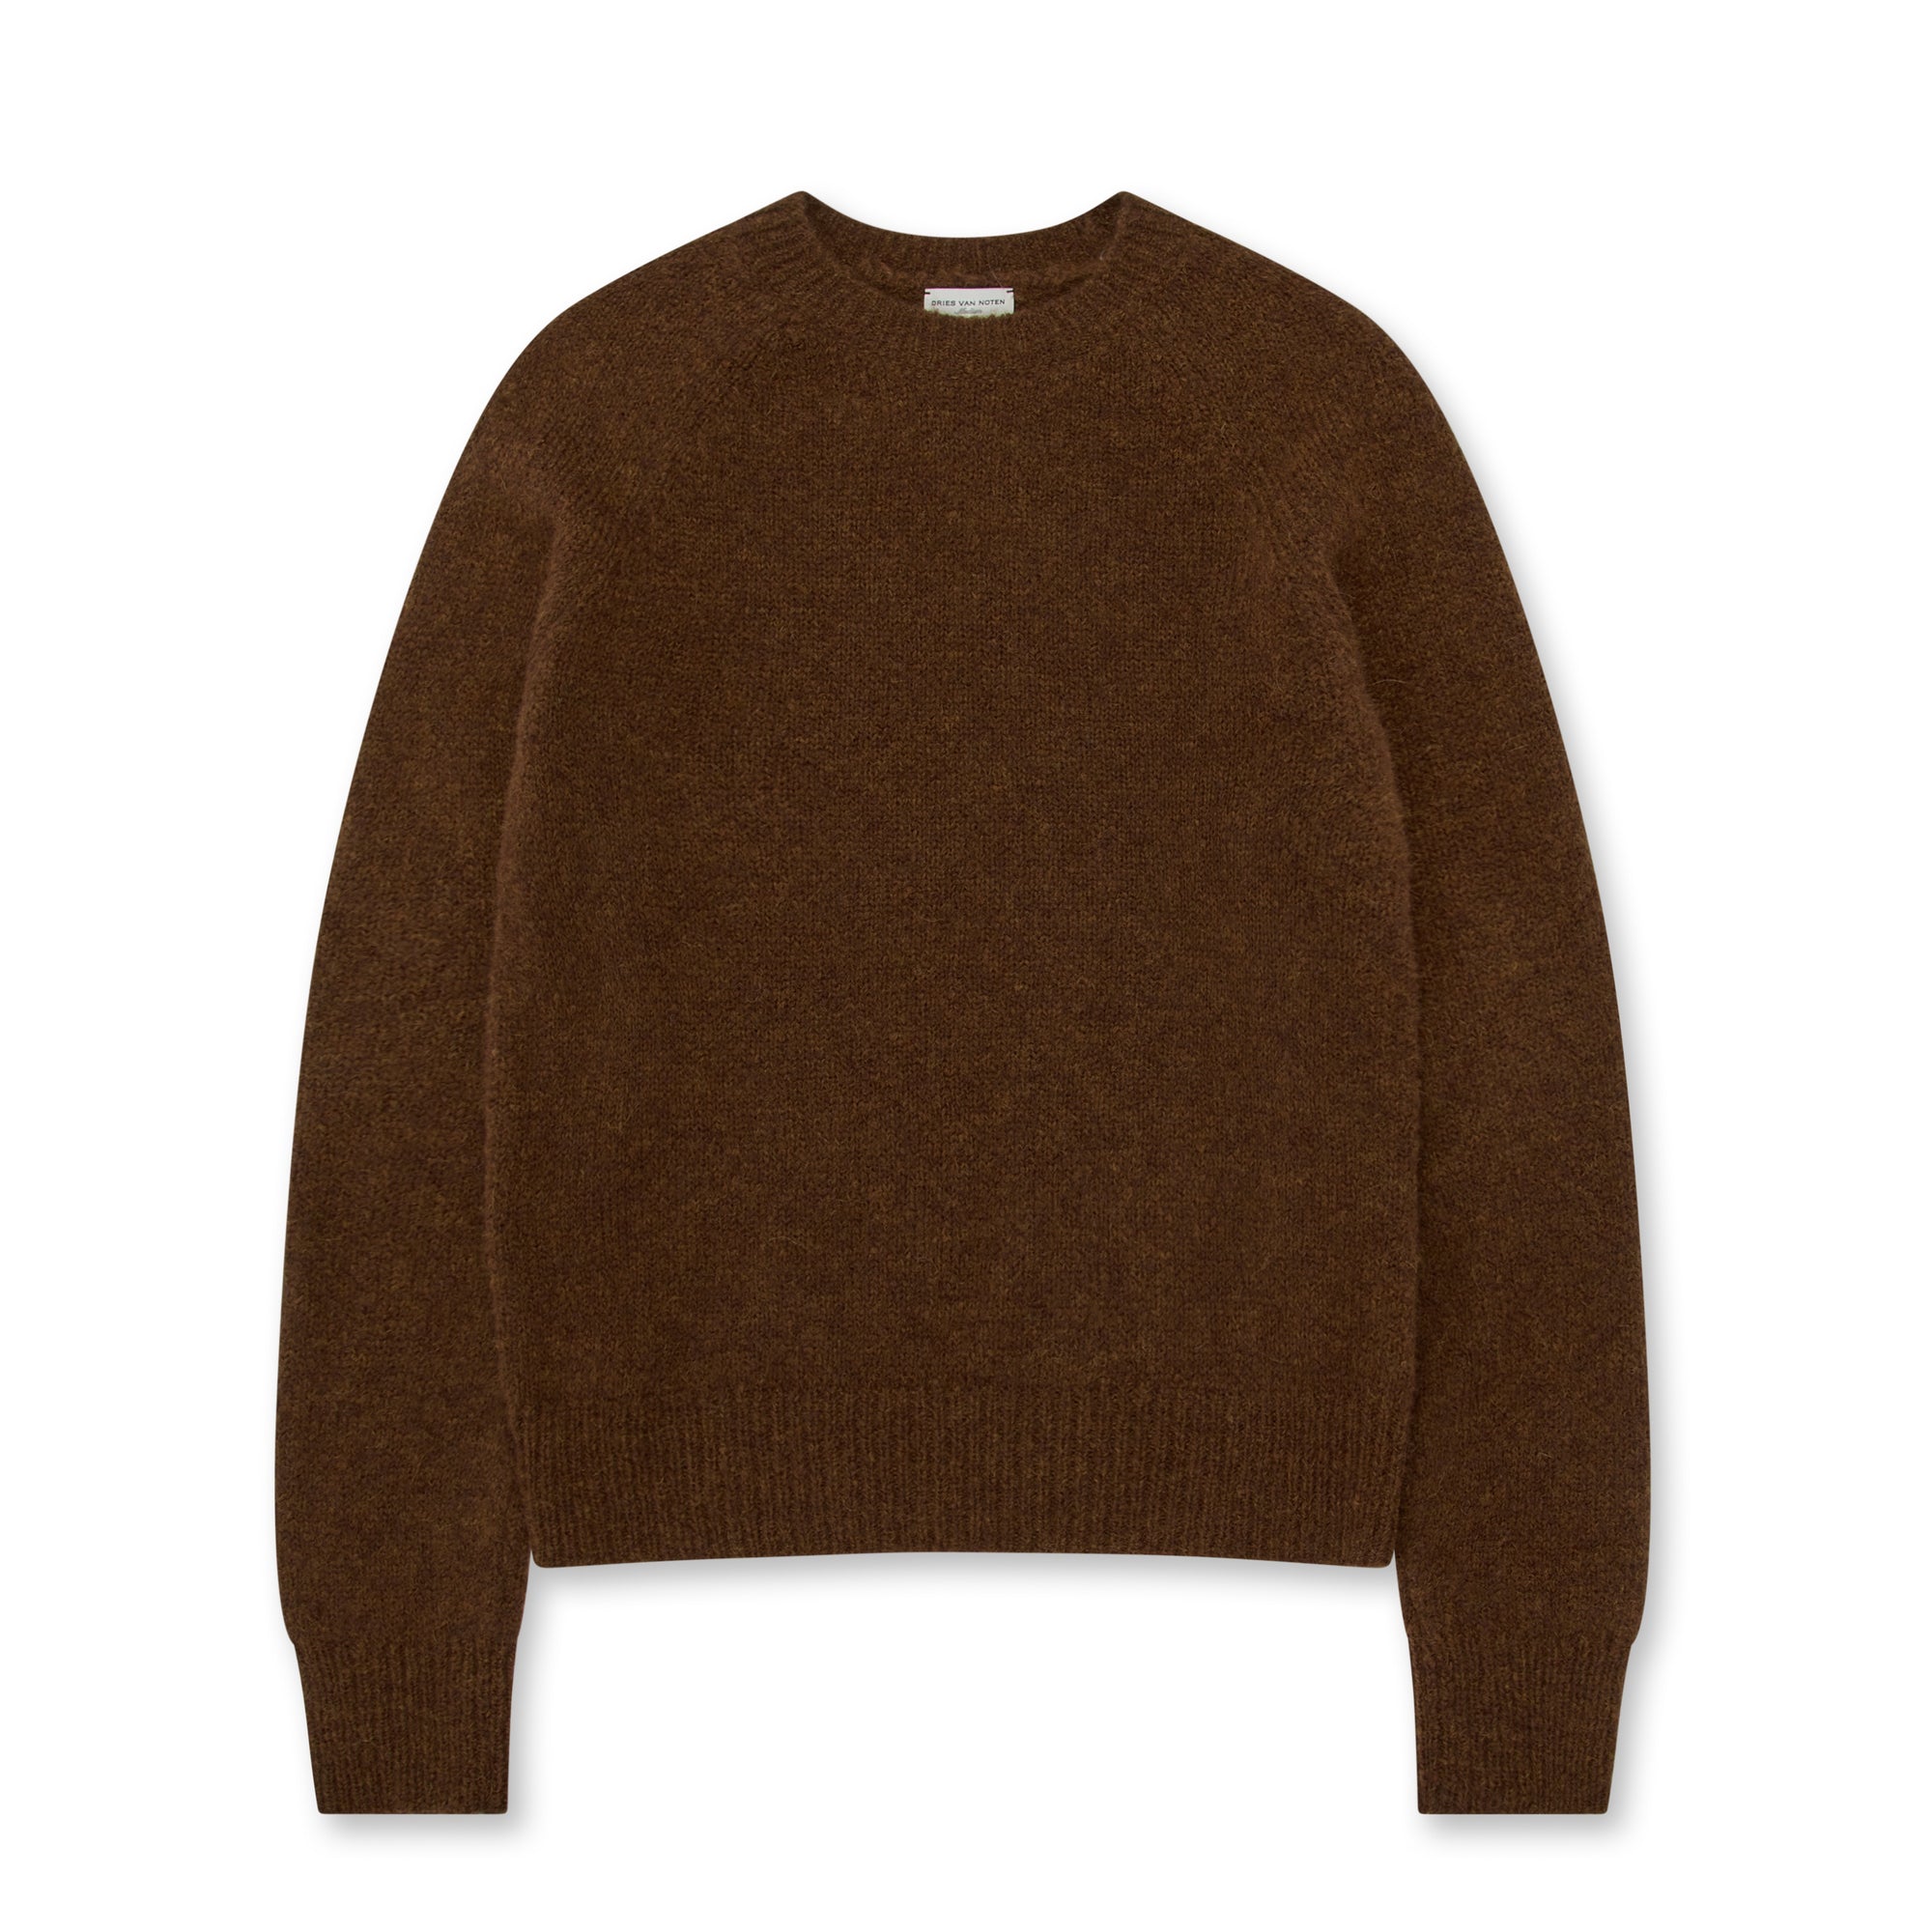 Dries Van Noten - Men’s Wool Sweater - (Brown) view 5